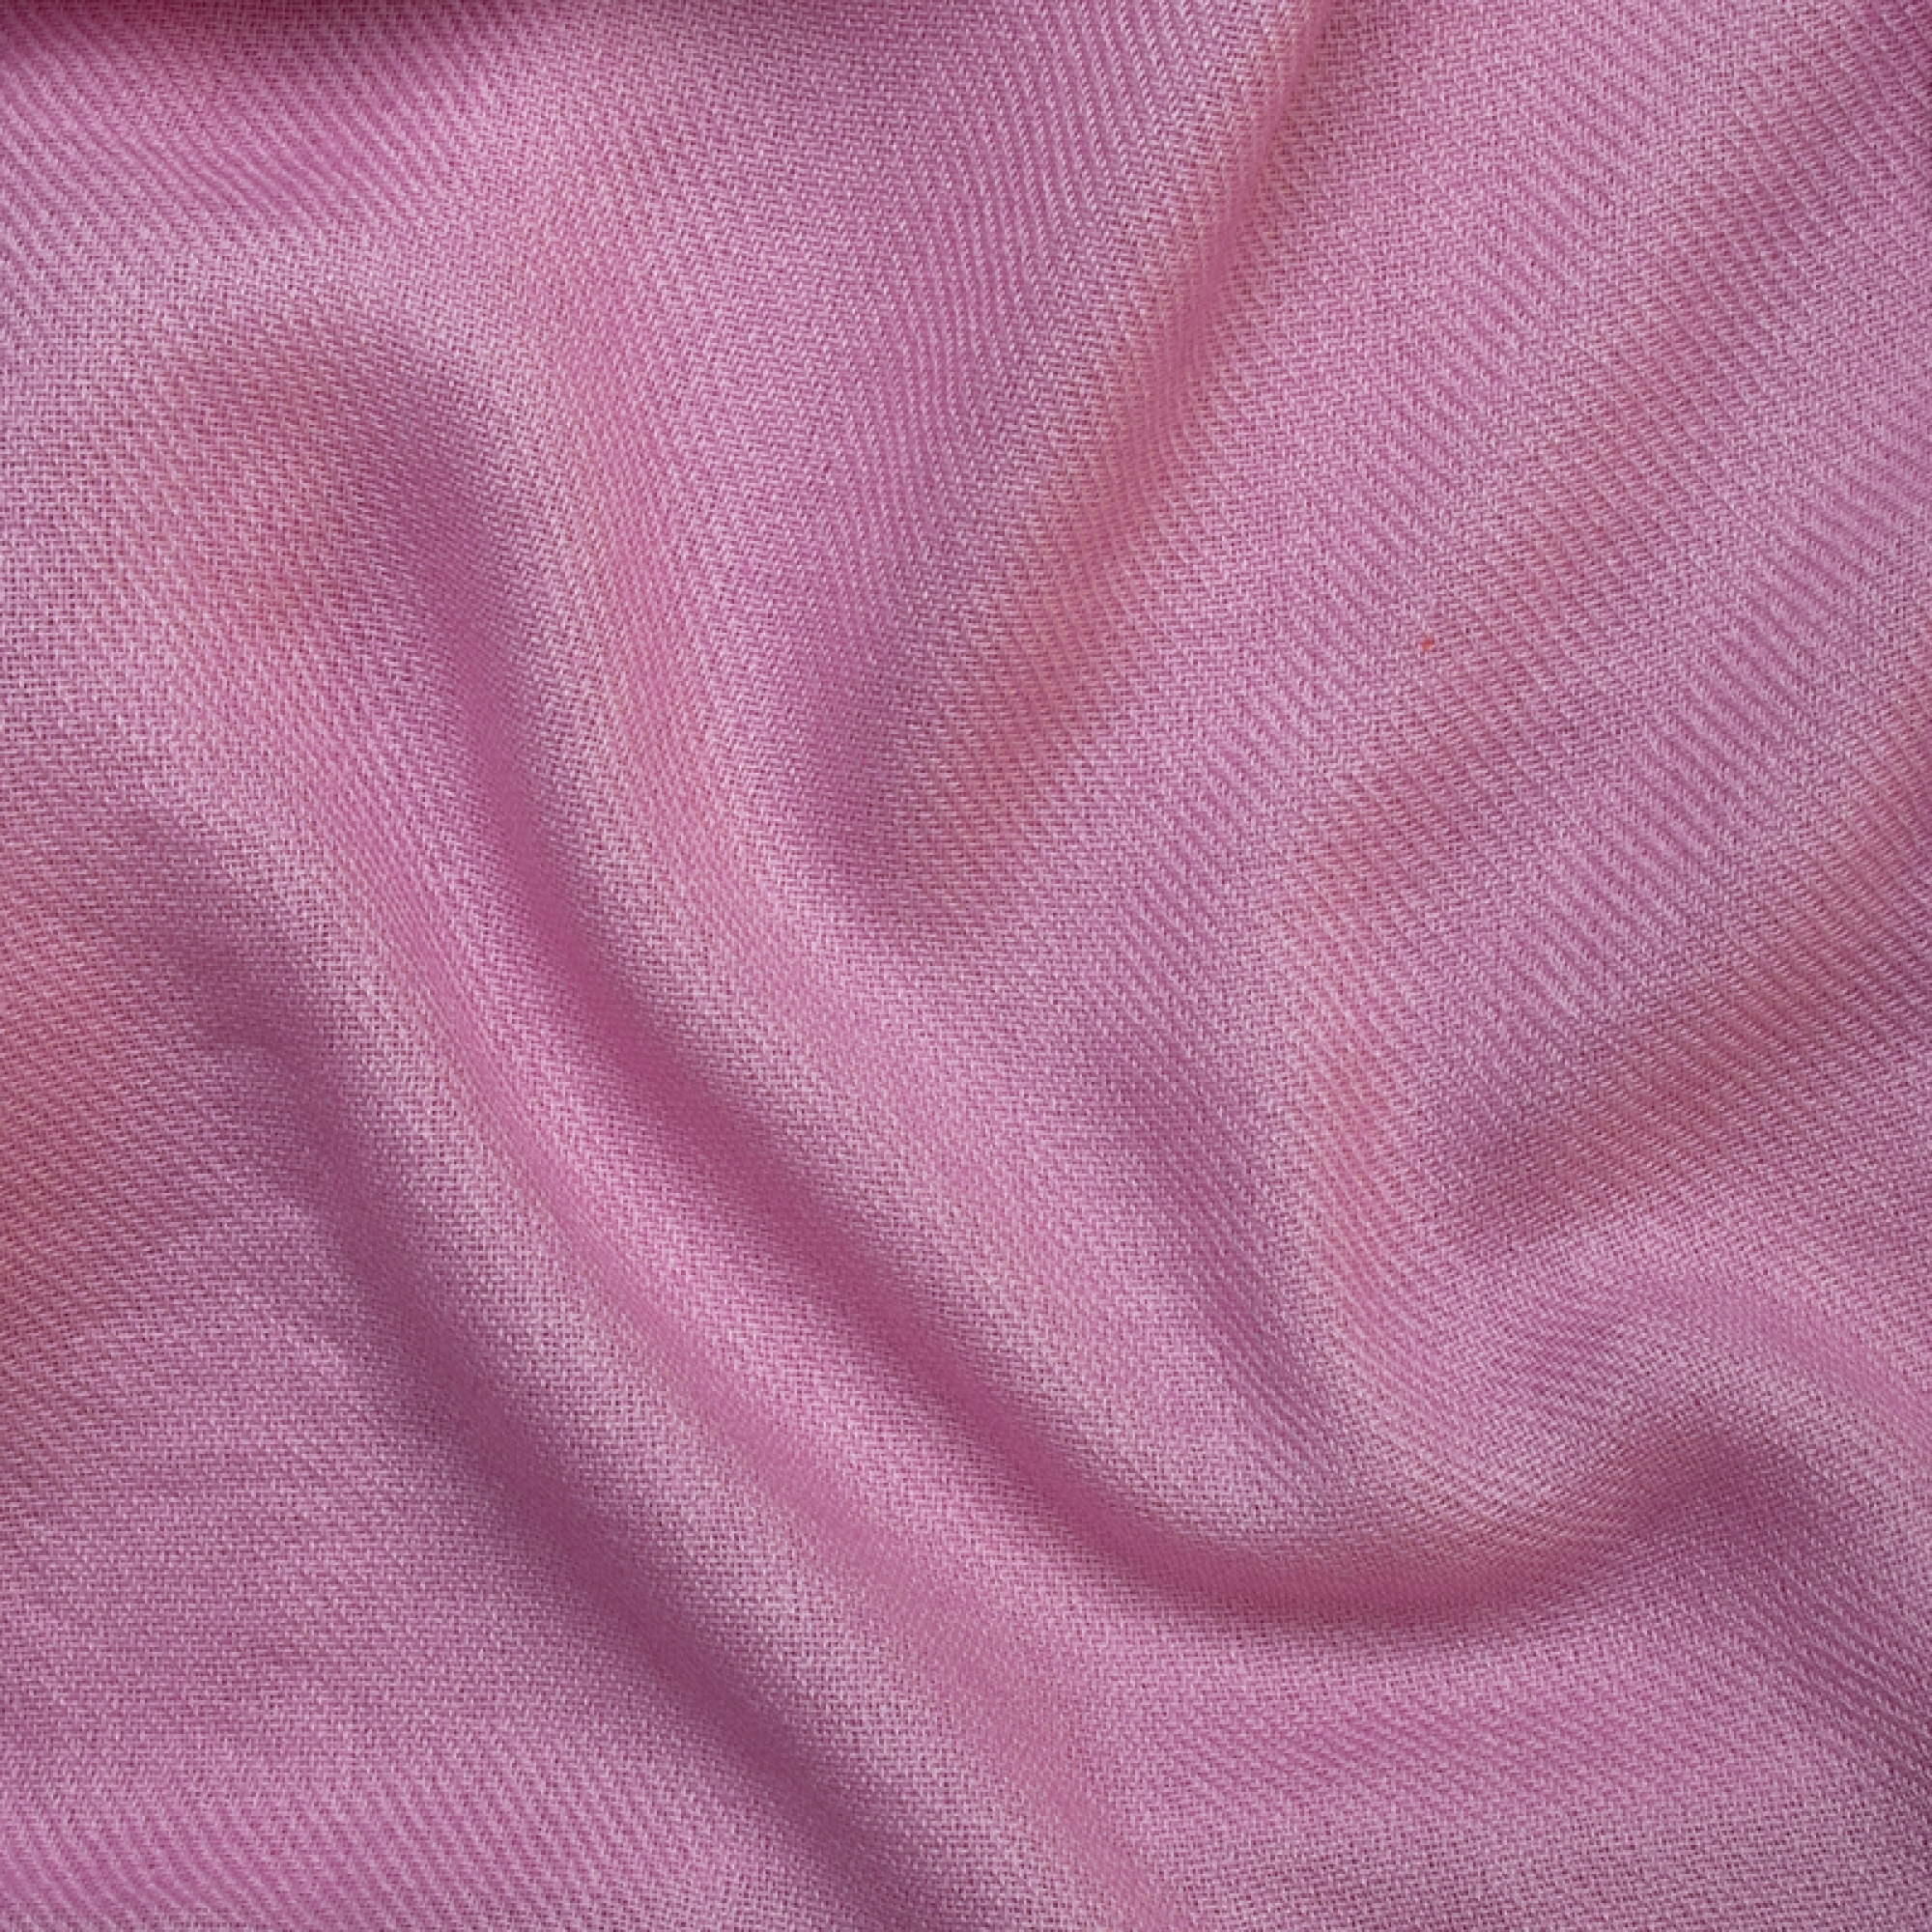 Cachemire accessoires couvertures plaids toodoo plain m 180 x 220 rose 180 x 220 cm